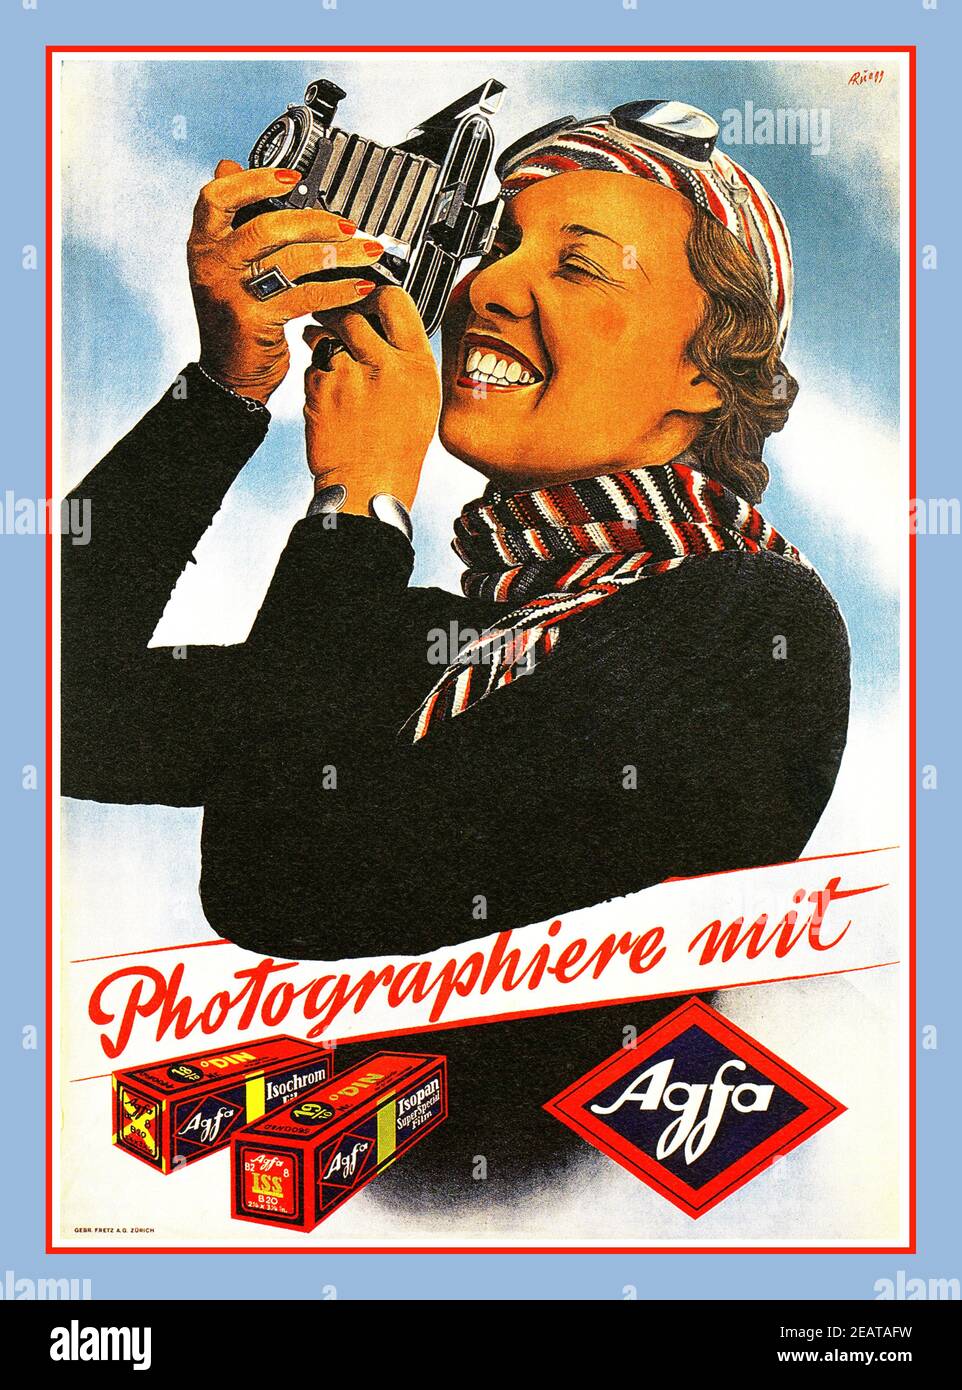 AGFA Vintage 1930's Agfa Film and Camera Annuncio pubblicitario dell'artista Albert Rüegg caratterizzato da un'attraente ed elegante donna che regge una fotocamera a soffietto con pellicola Agfa roll. 'PHOTOGRAPHIERE mit Agfa', un'azienda di produzione fotografica della Germania occidentale di alta qualità (molto popolare negli anni '30-80) Germania 1937 Foto Stock